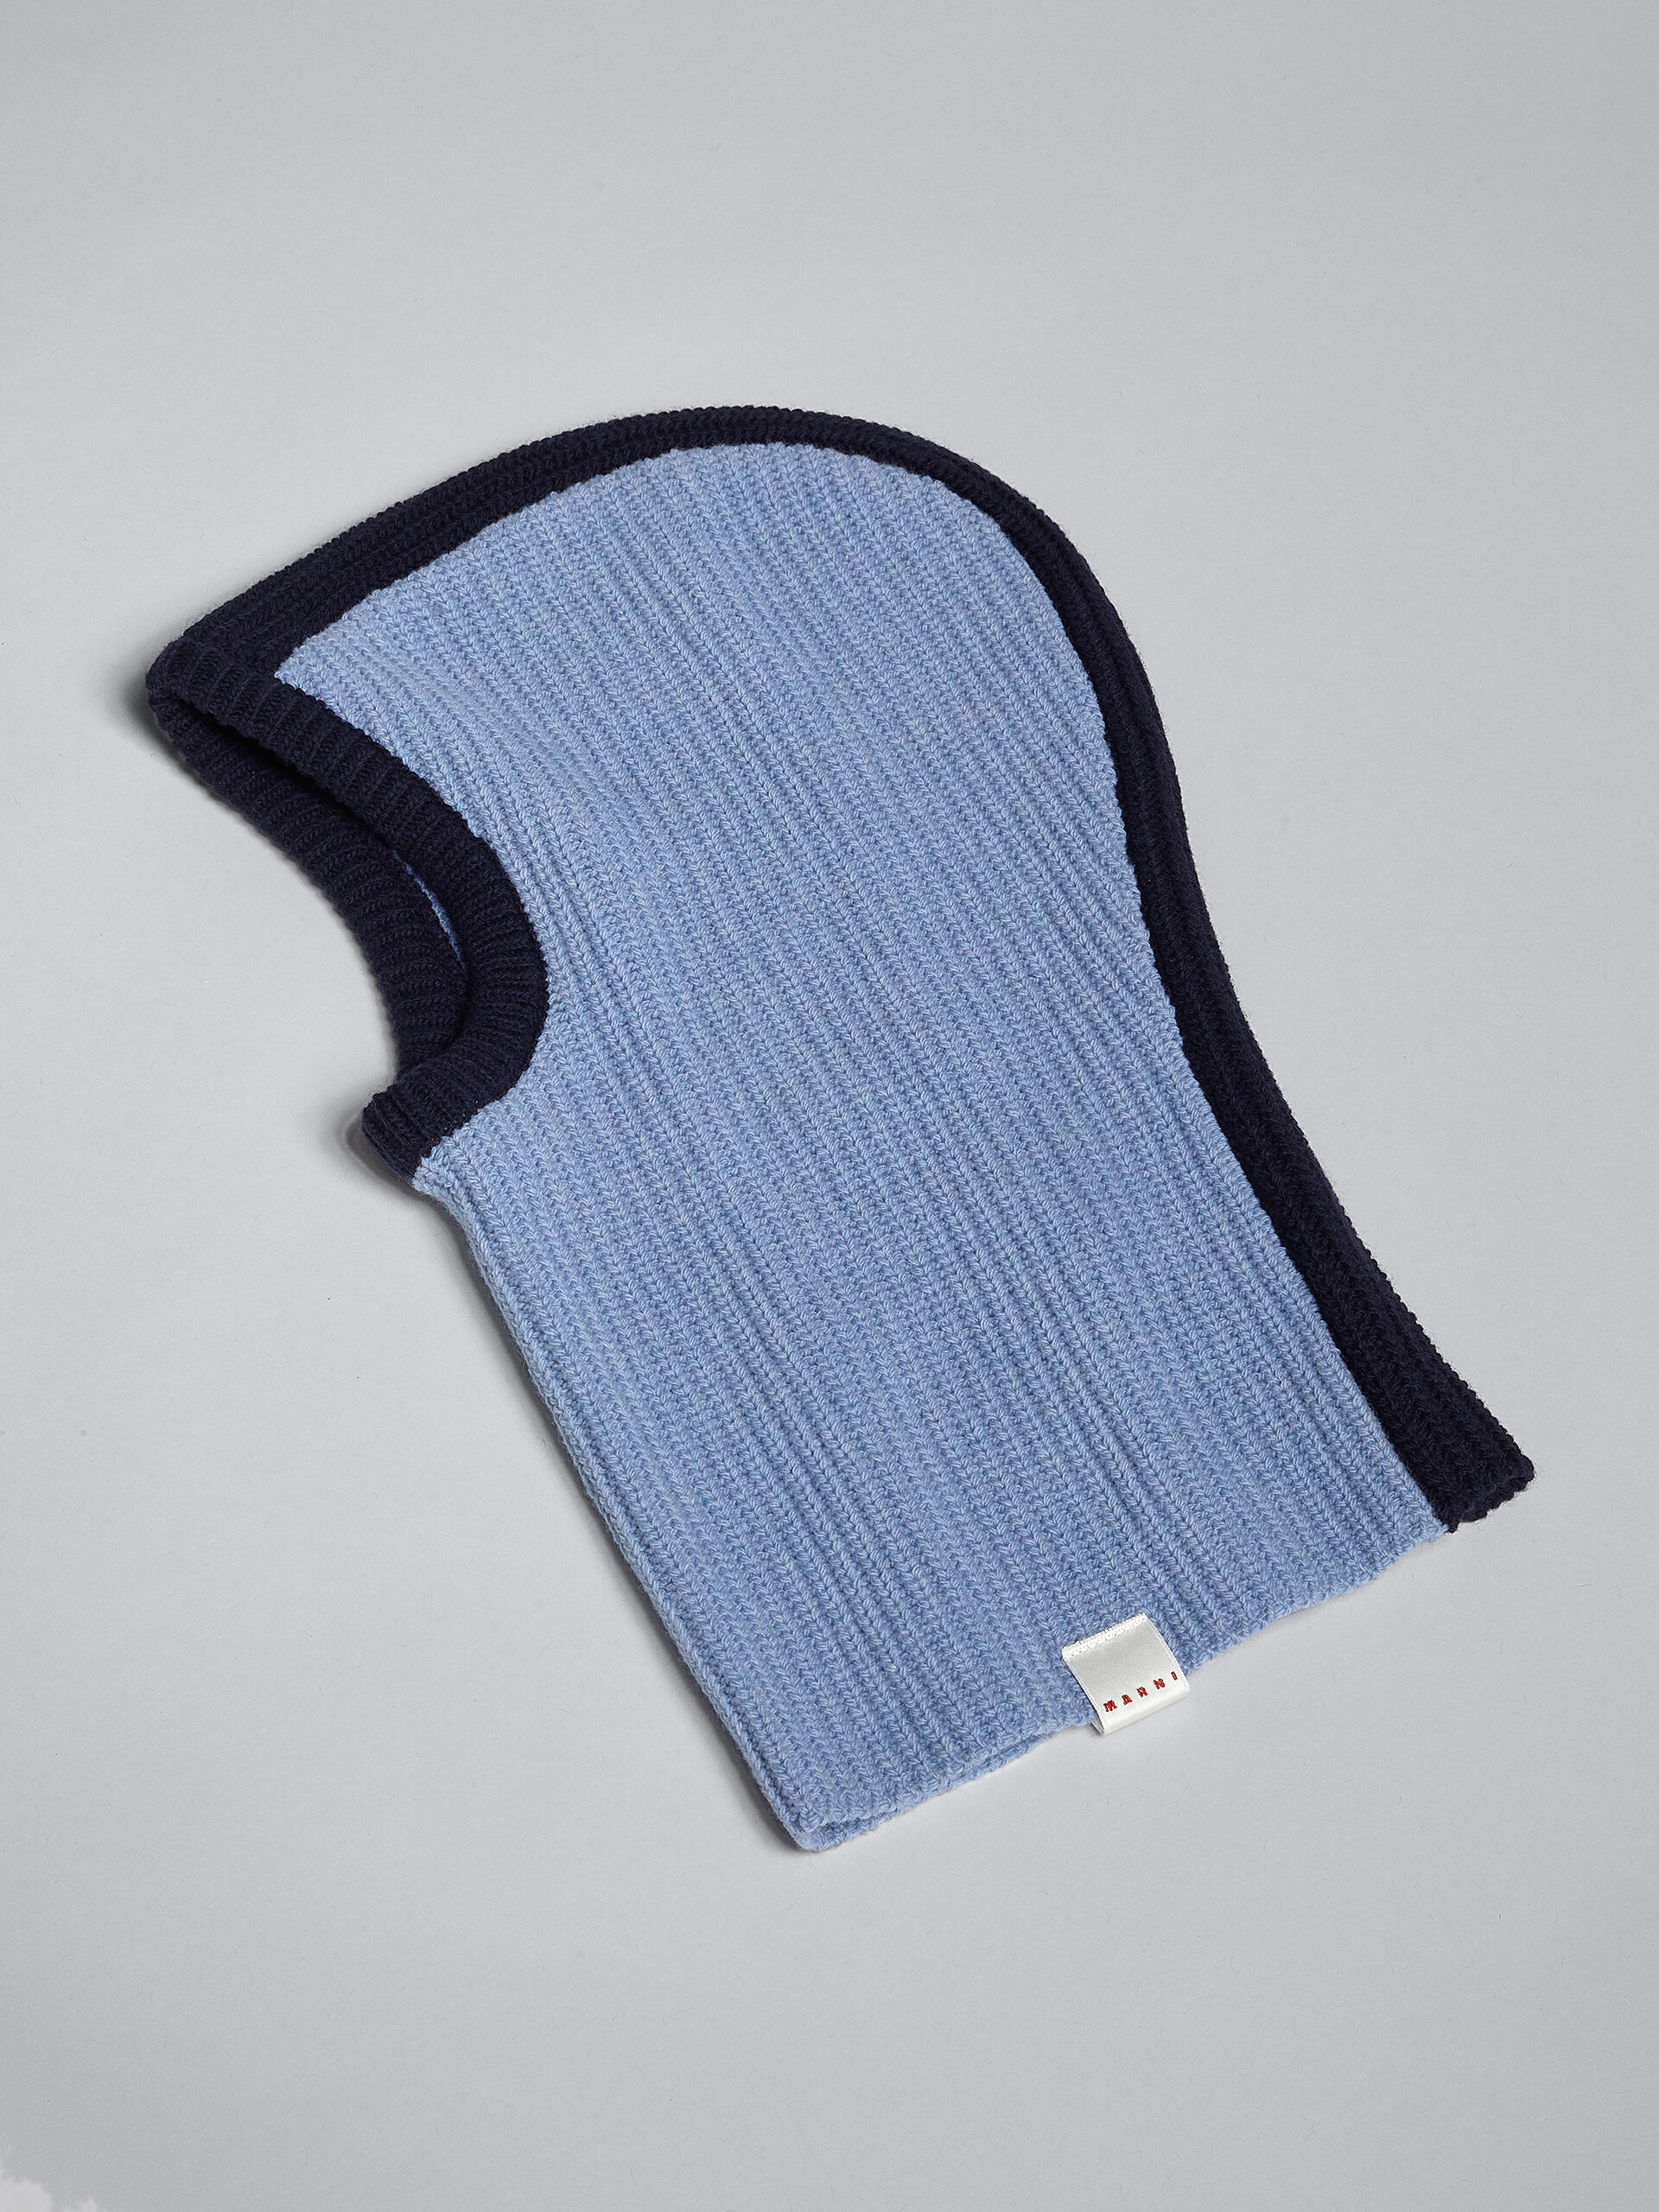 Cagoule en laine Shetland bleu pâle - Autres accessoires - Image 3